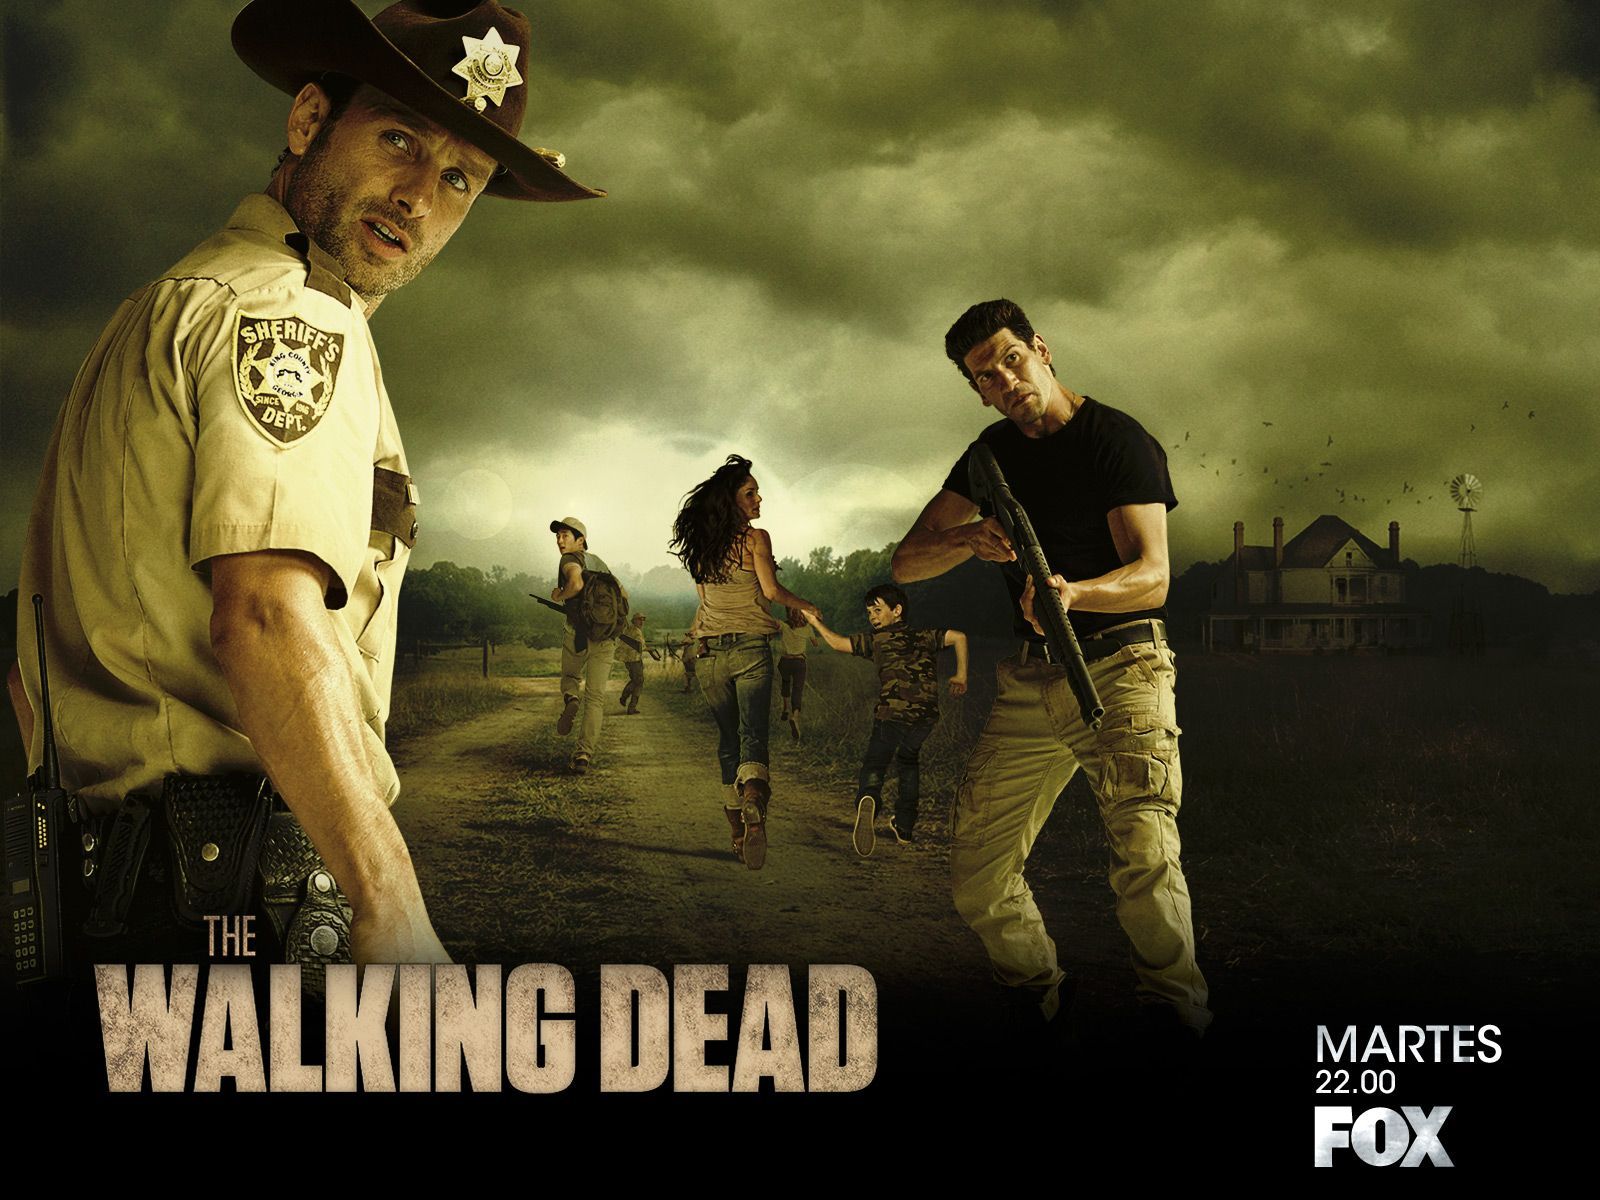 The Walking Dead - The Walking Dead Wallpaper (30371943) - Fanpop